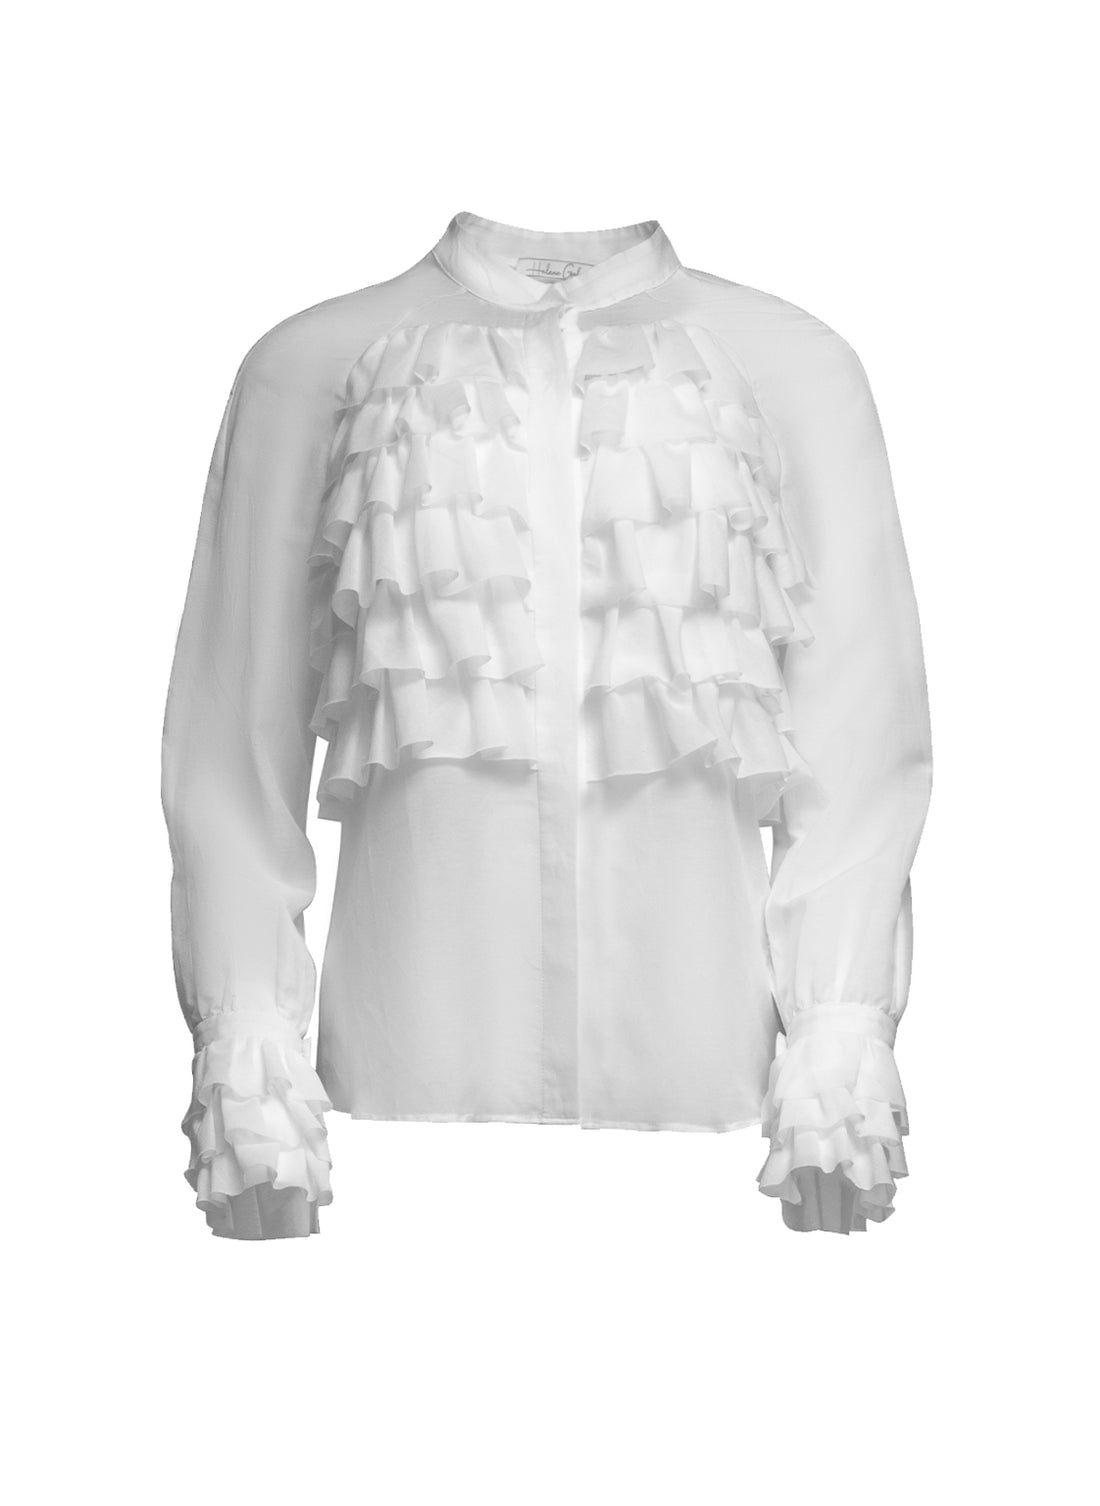 Hochwertige Bluse aus Baumwolle-Seiden Mix mit einer Vielzahl per Hand gelegten Volants im Brustbereich sowie an den Armabschlüssen